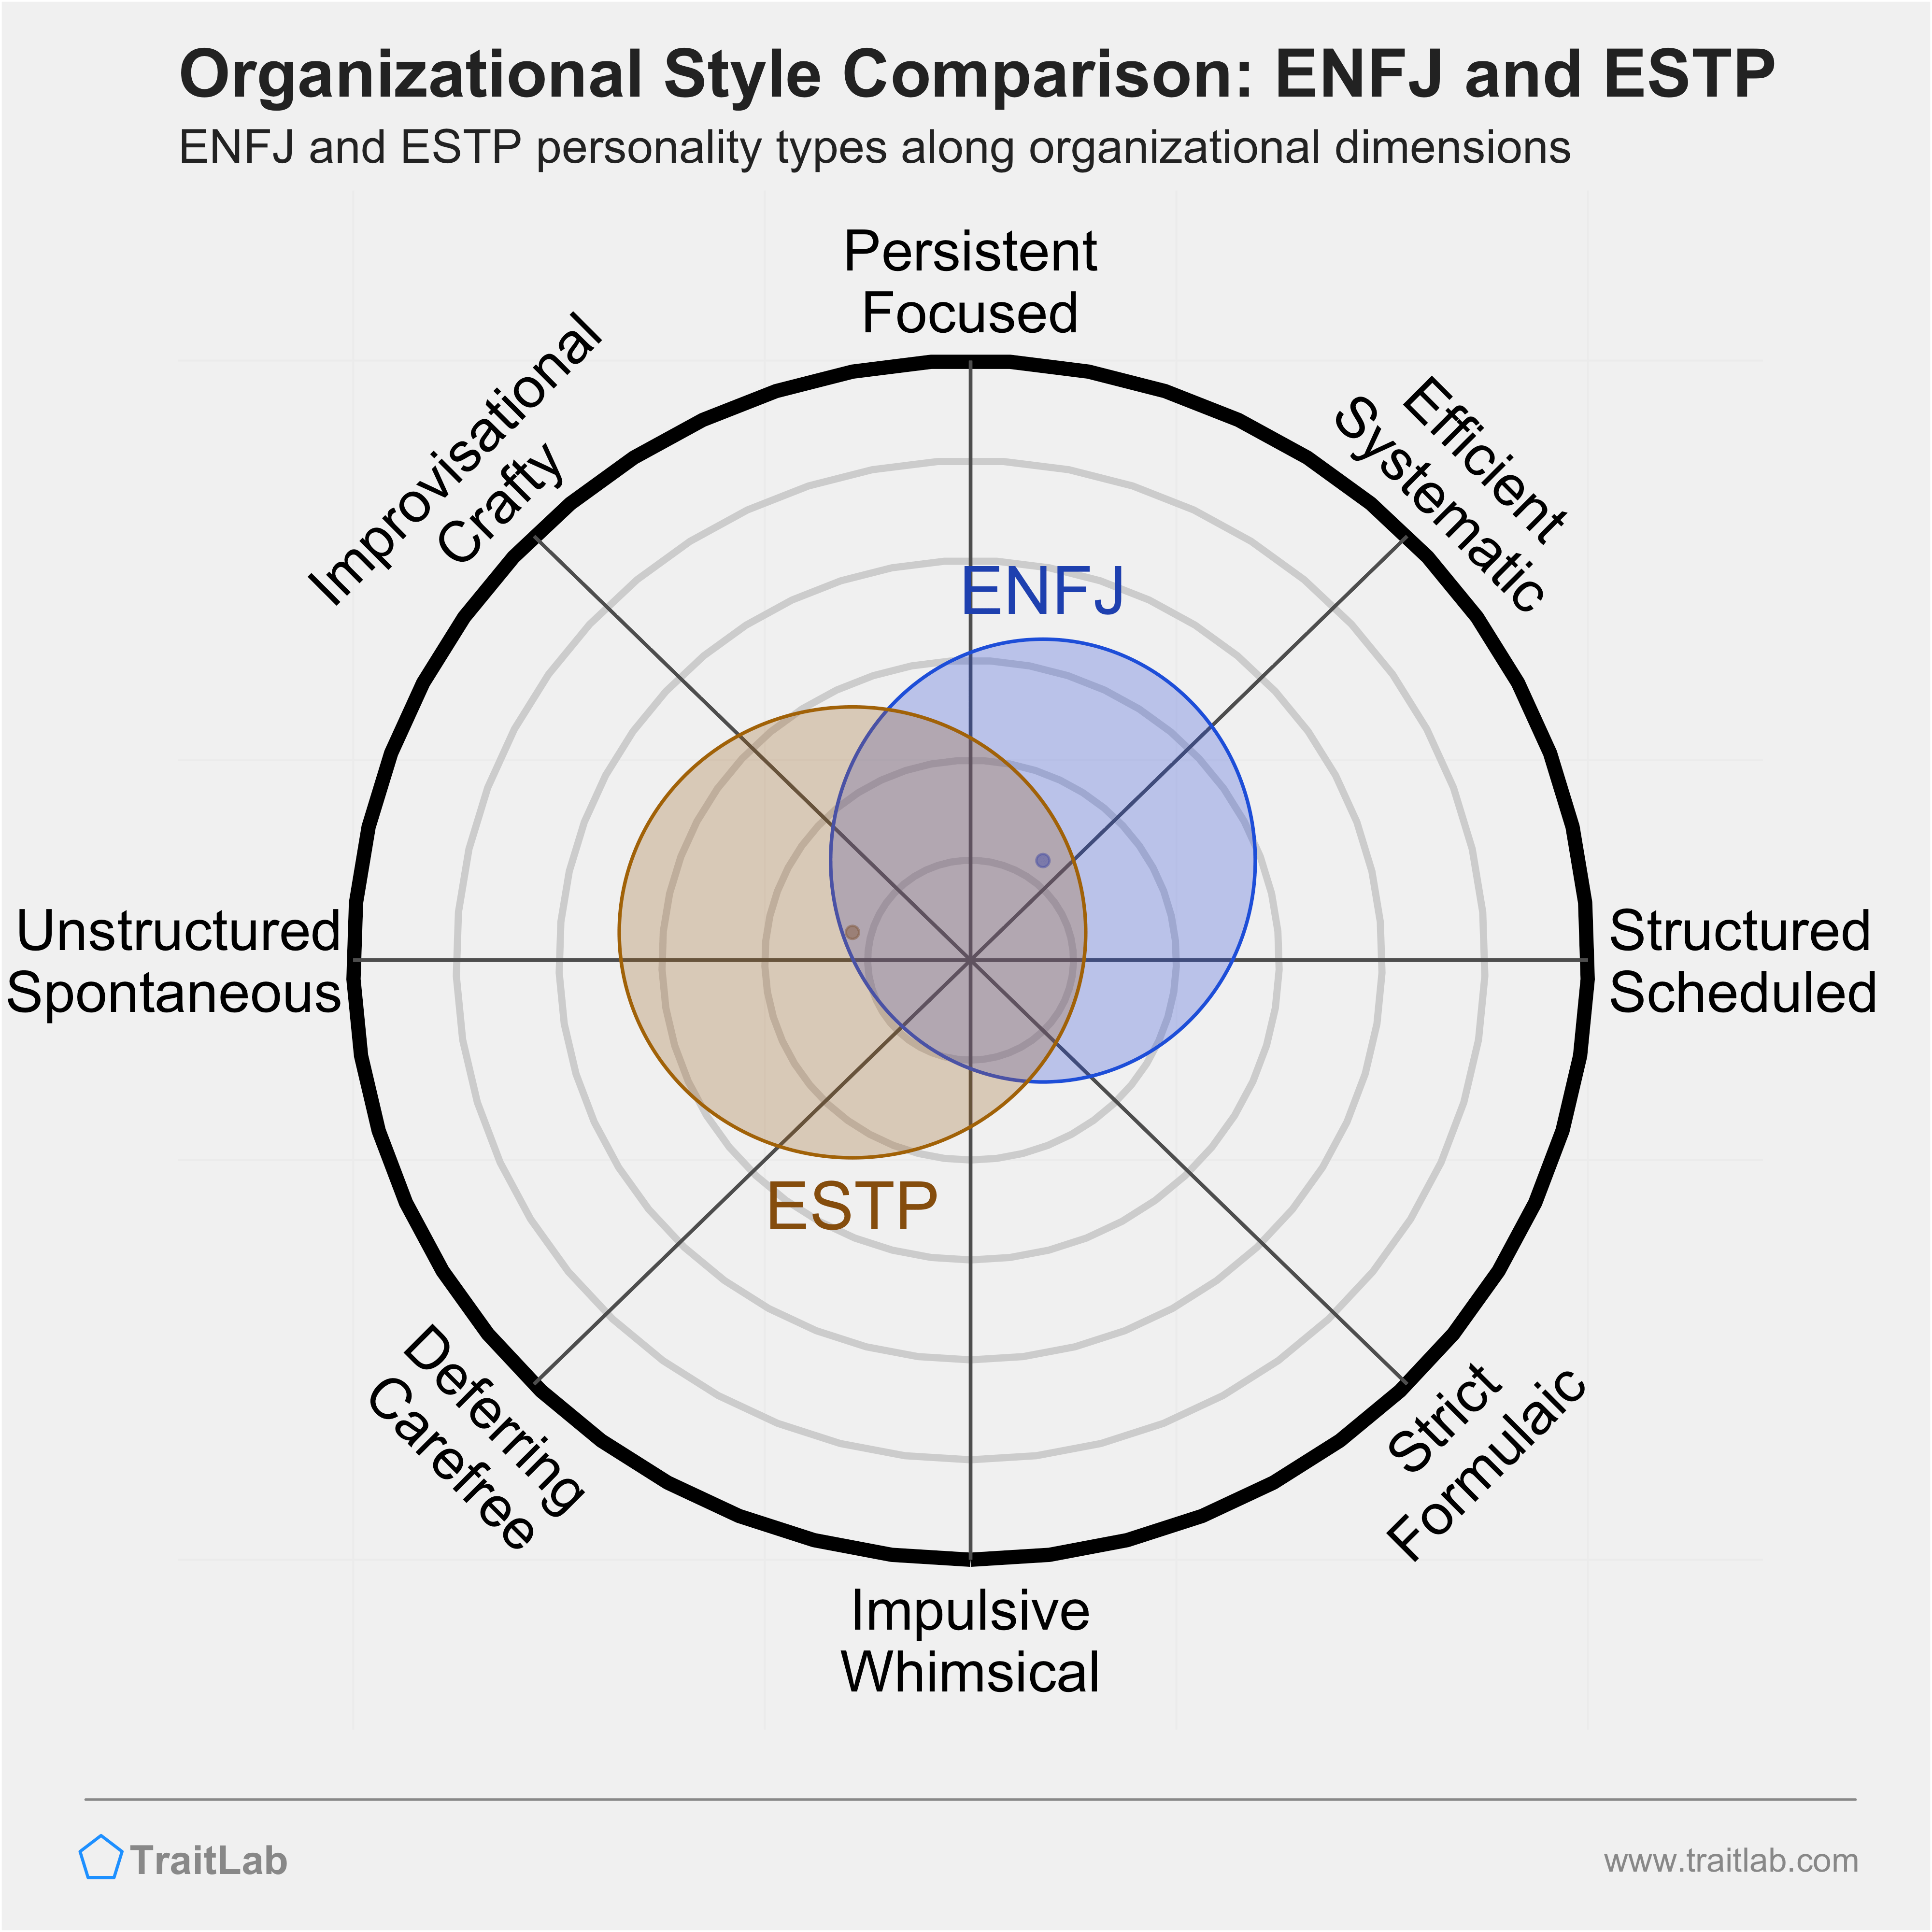 ENFJ and ESTP comparison across organizational dimensions